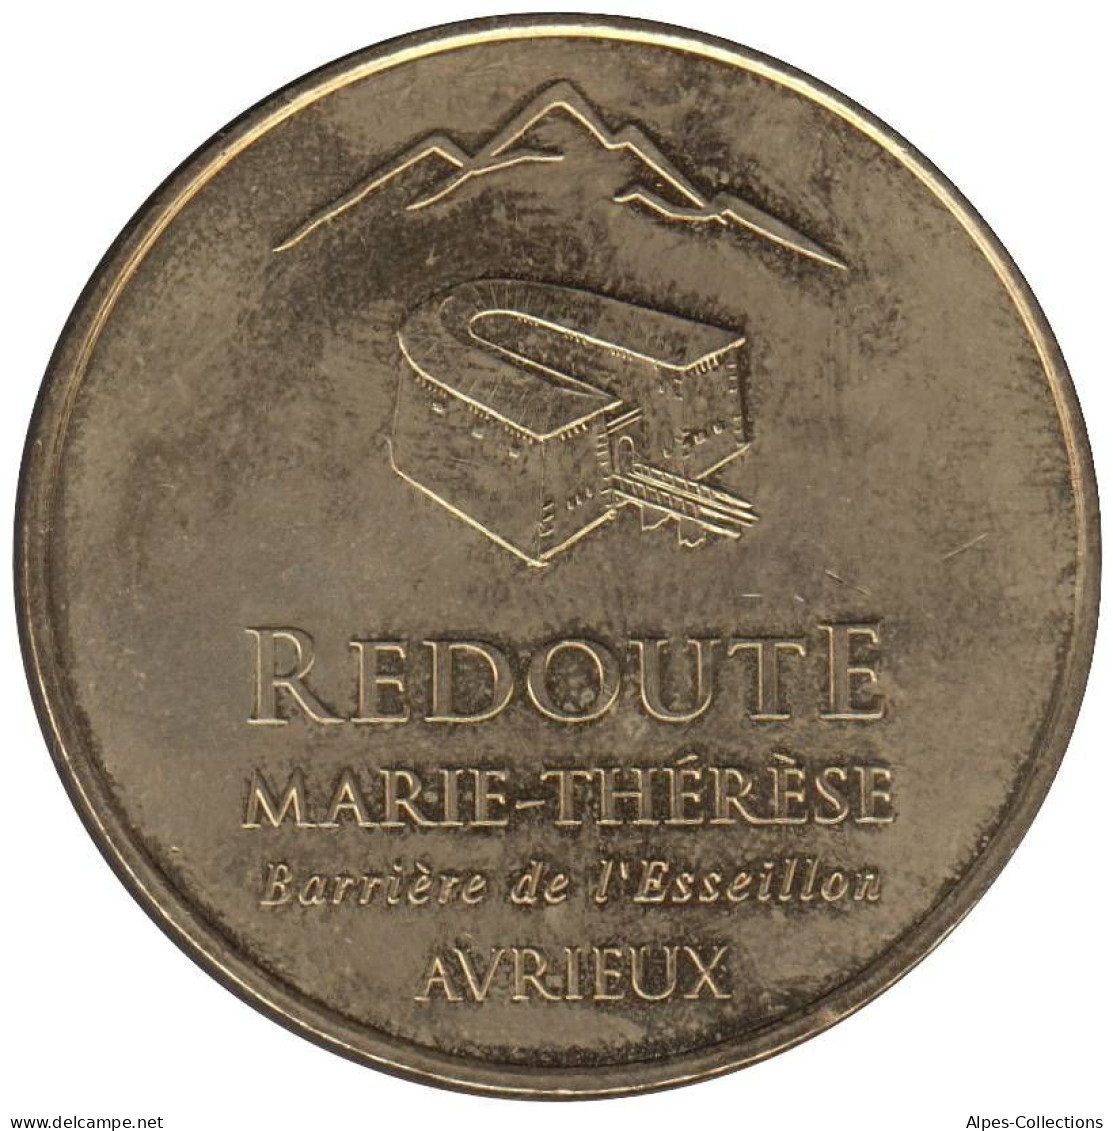 73-0661 - JETON TOURISTIQUE MDP - Avrieux - Redoute Marie-Thérèse - 2007.1 - 2007